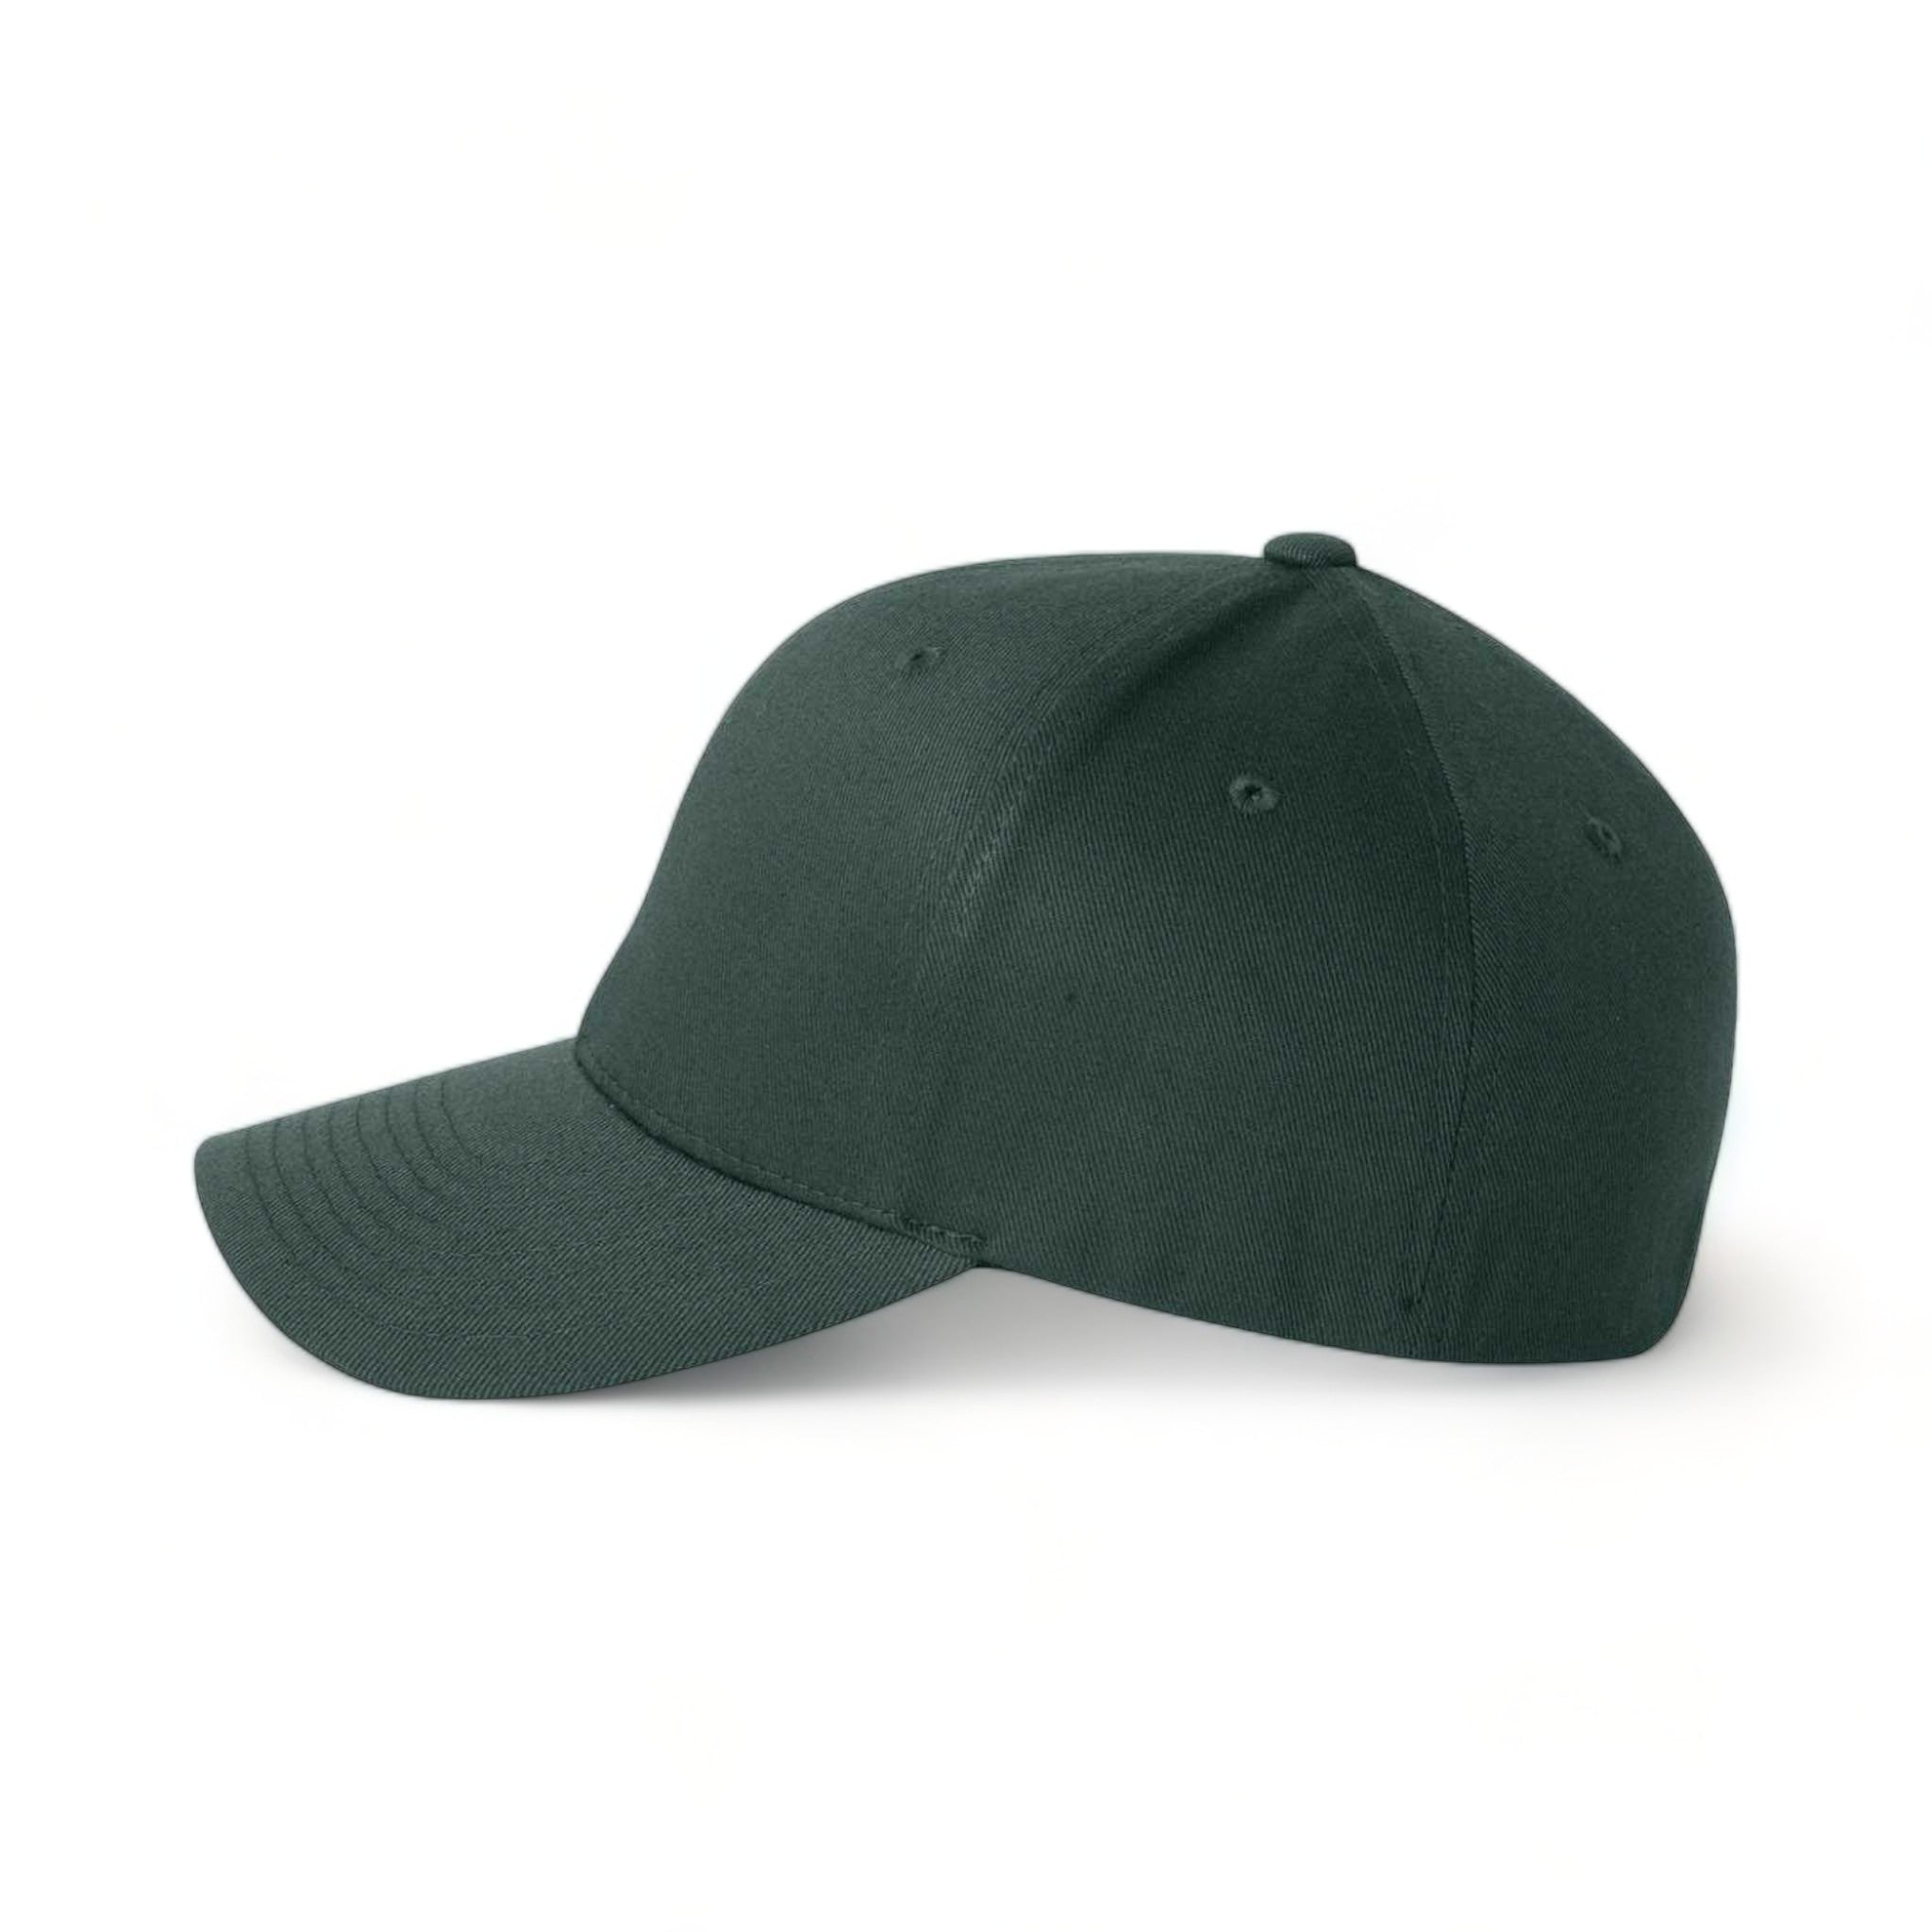 Side view of Flexfit 6277 custom hat in spruce